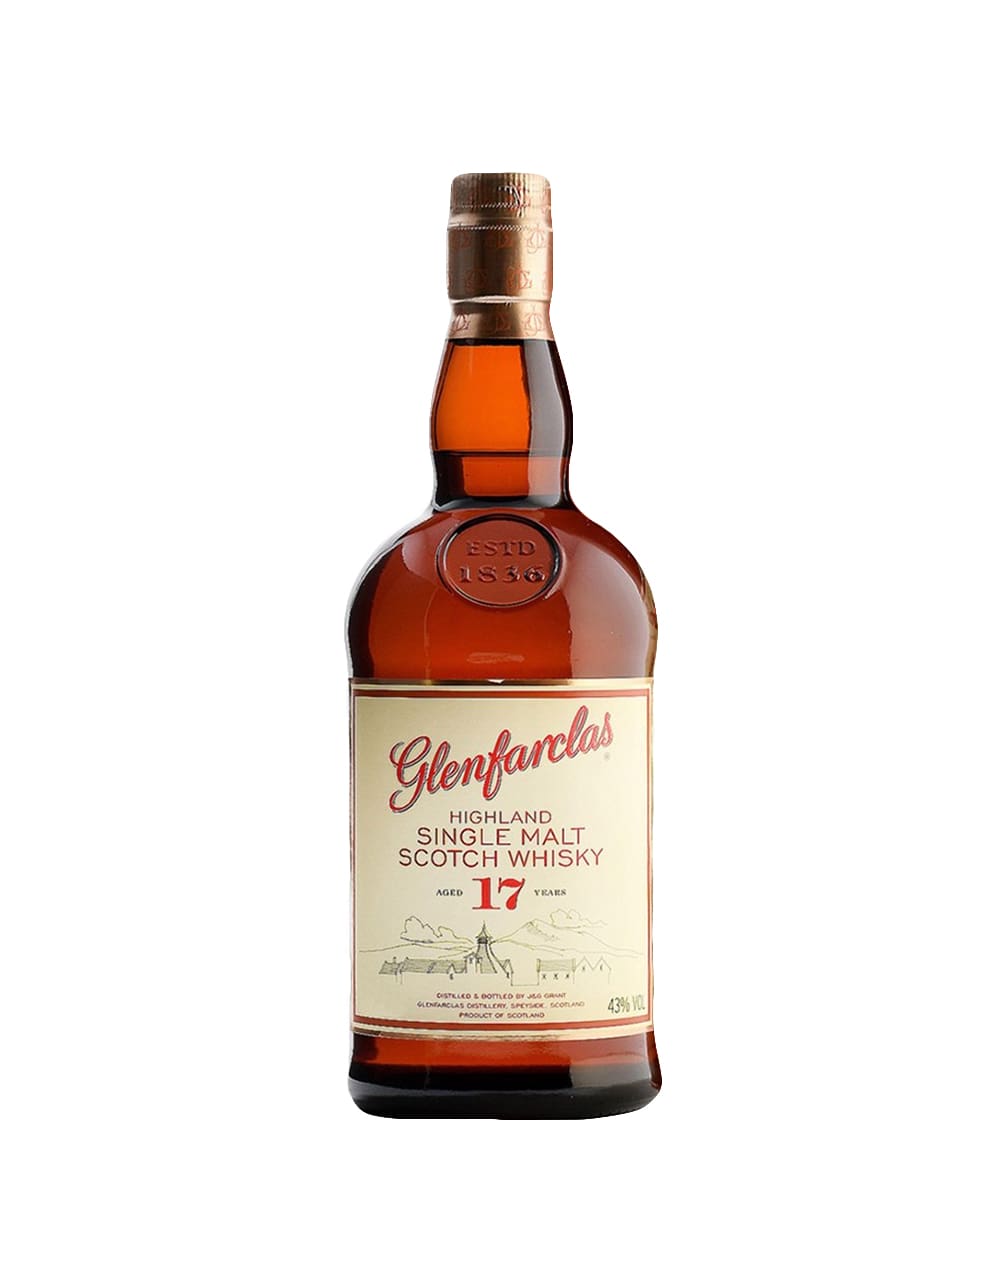 Glenfarclas 17 Year Old Single Malt Scotch Whisky